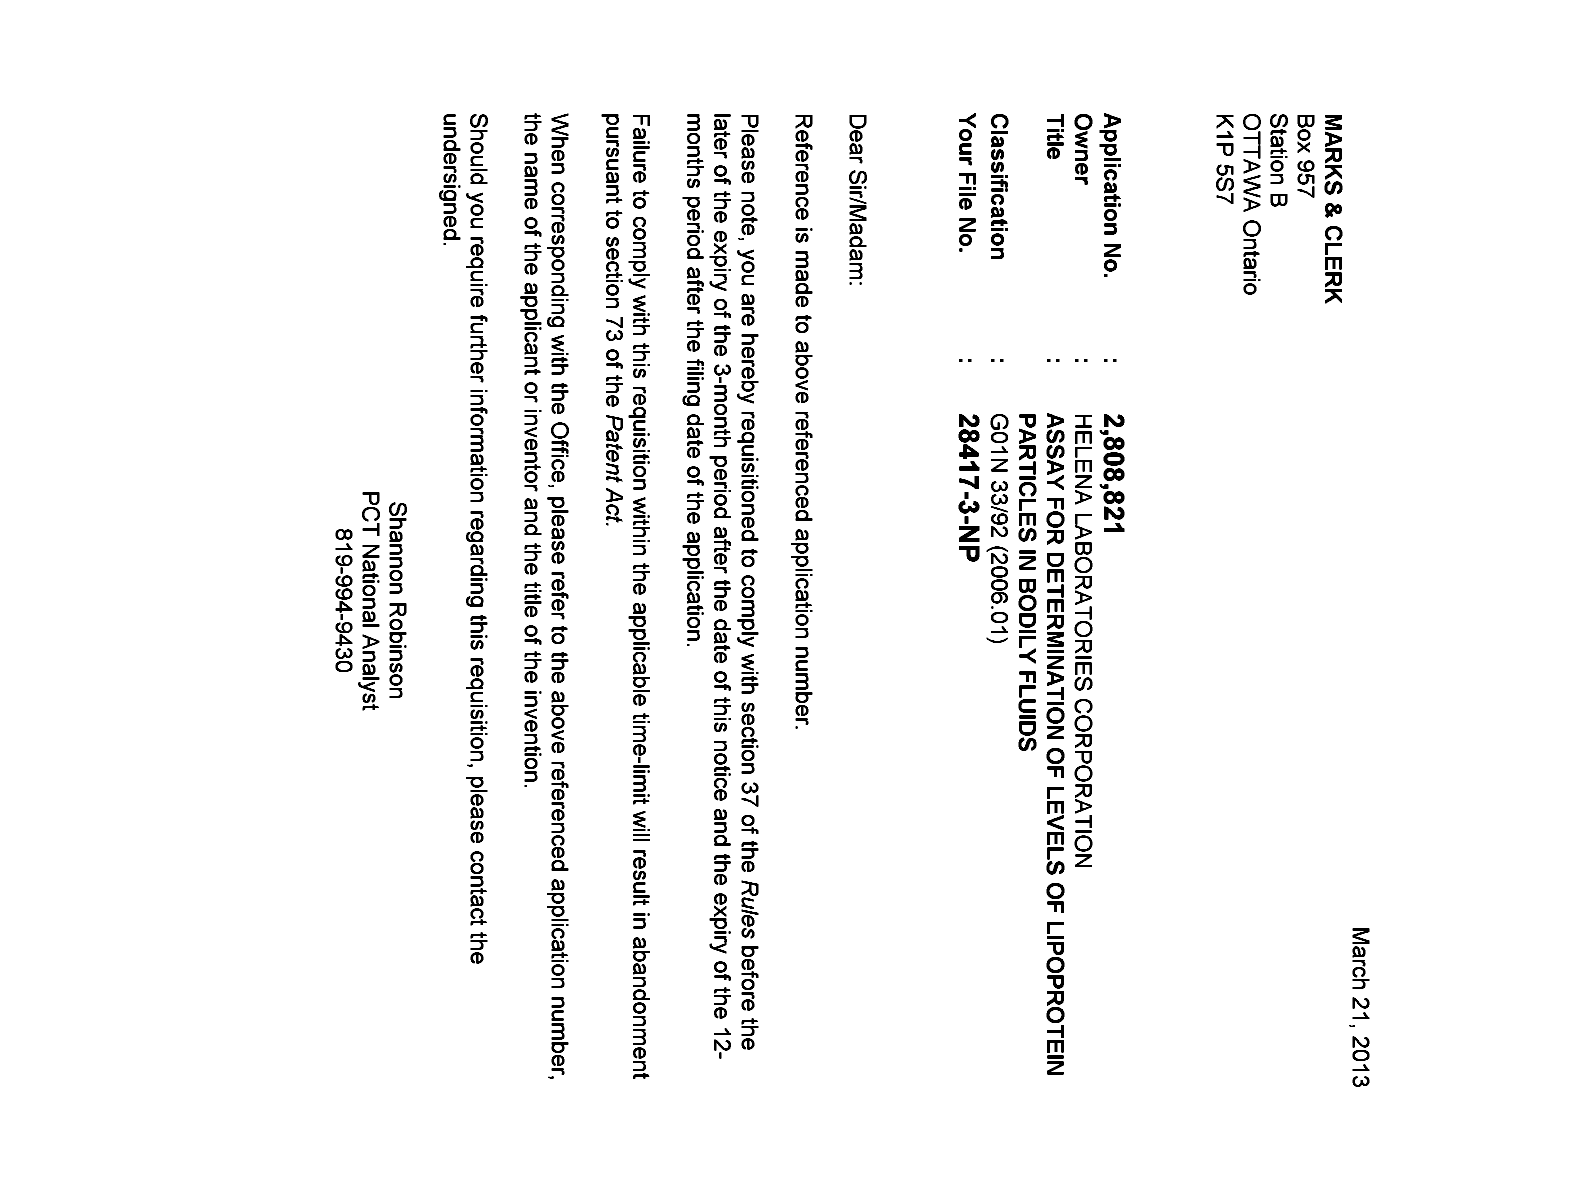 Document de brevet canadien 2808821. Correspondance 20121221. Image 1 de 1